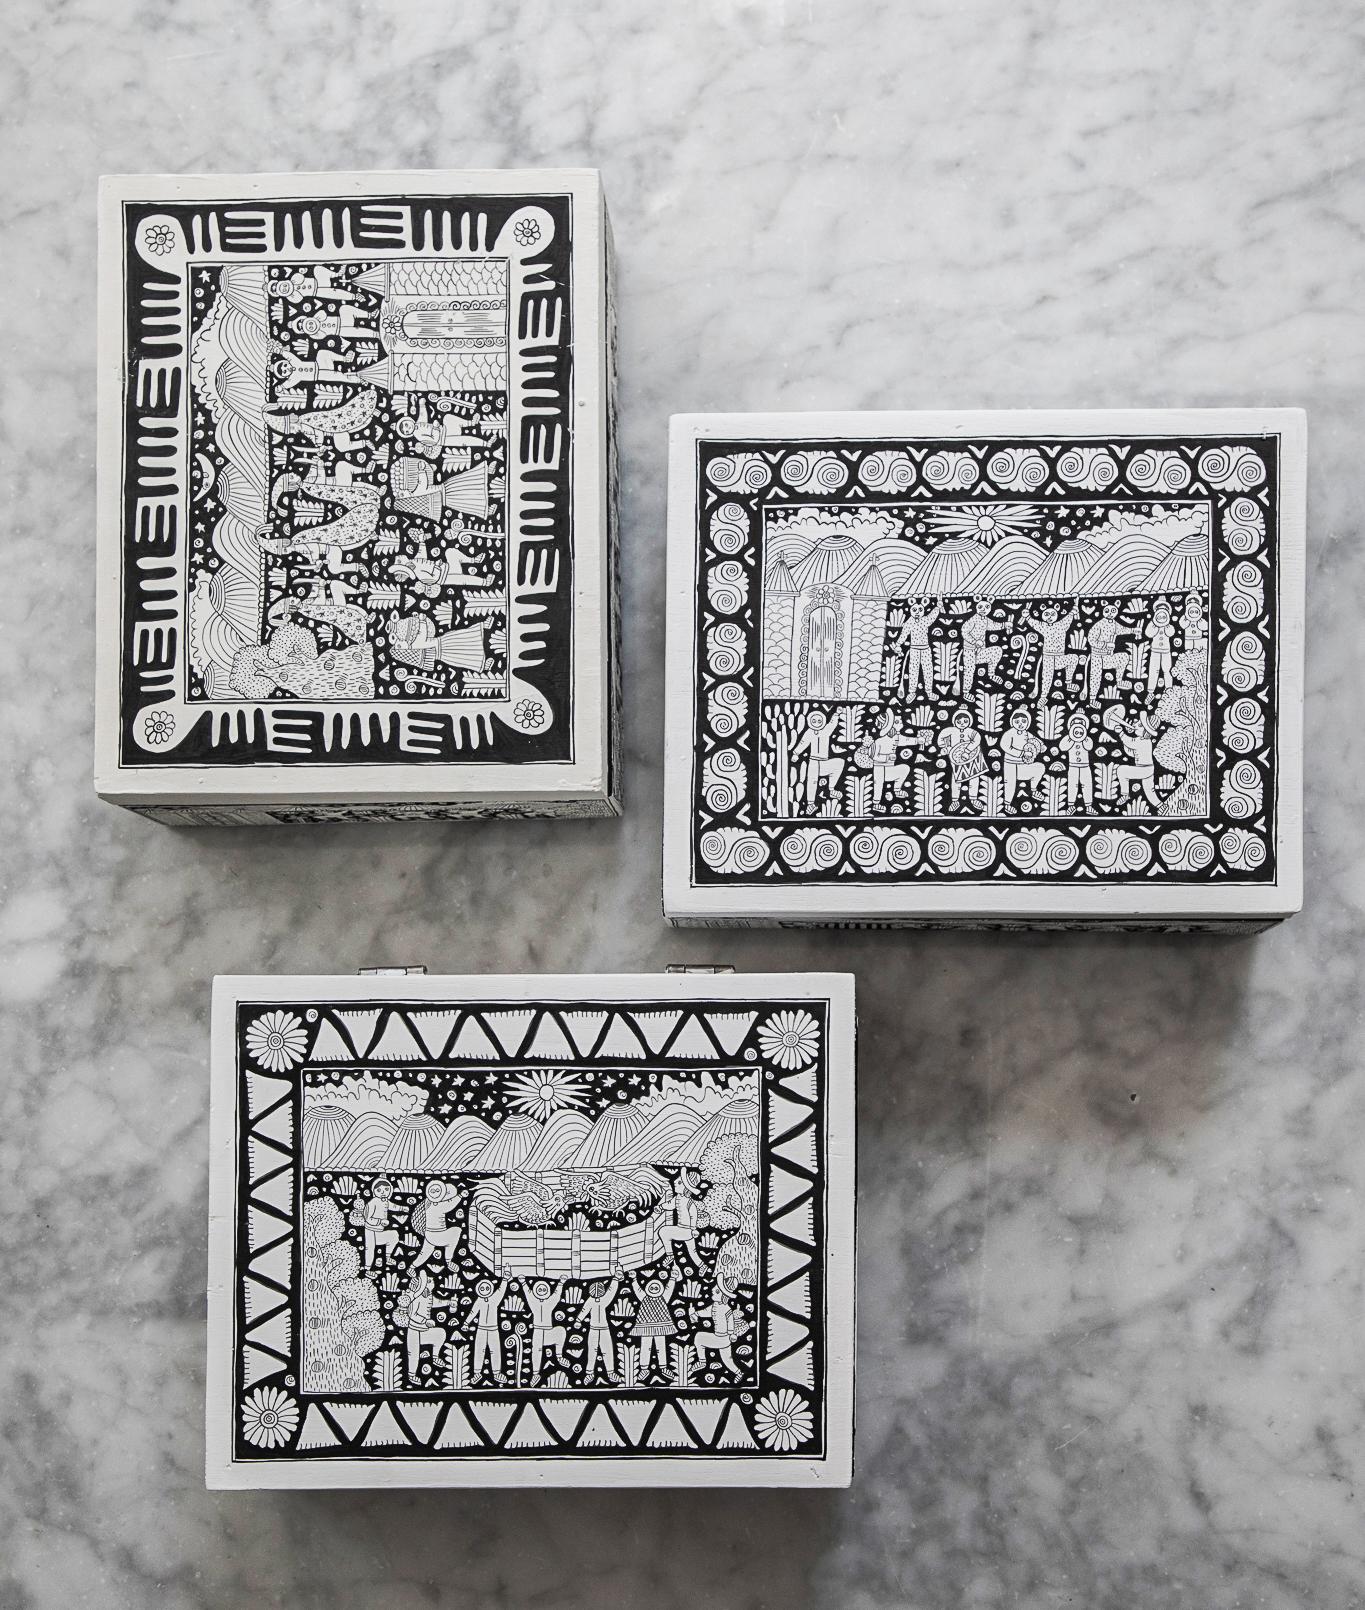 3er-Set Xalitla-Box von Onora
Abmessungen: 25 x 20 cm
MATERIALIEN: Freihand bemaltes Holz

Handbemalte Teedose aus Xalitla, Guerrero. Die auf jedem Stück gemalten Szenen zeigen das alltägliche Leben in dieser Region von Guerrero, von der